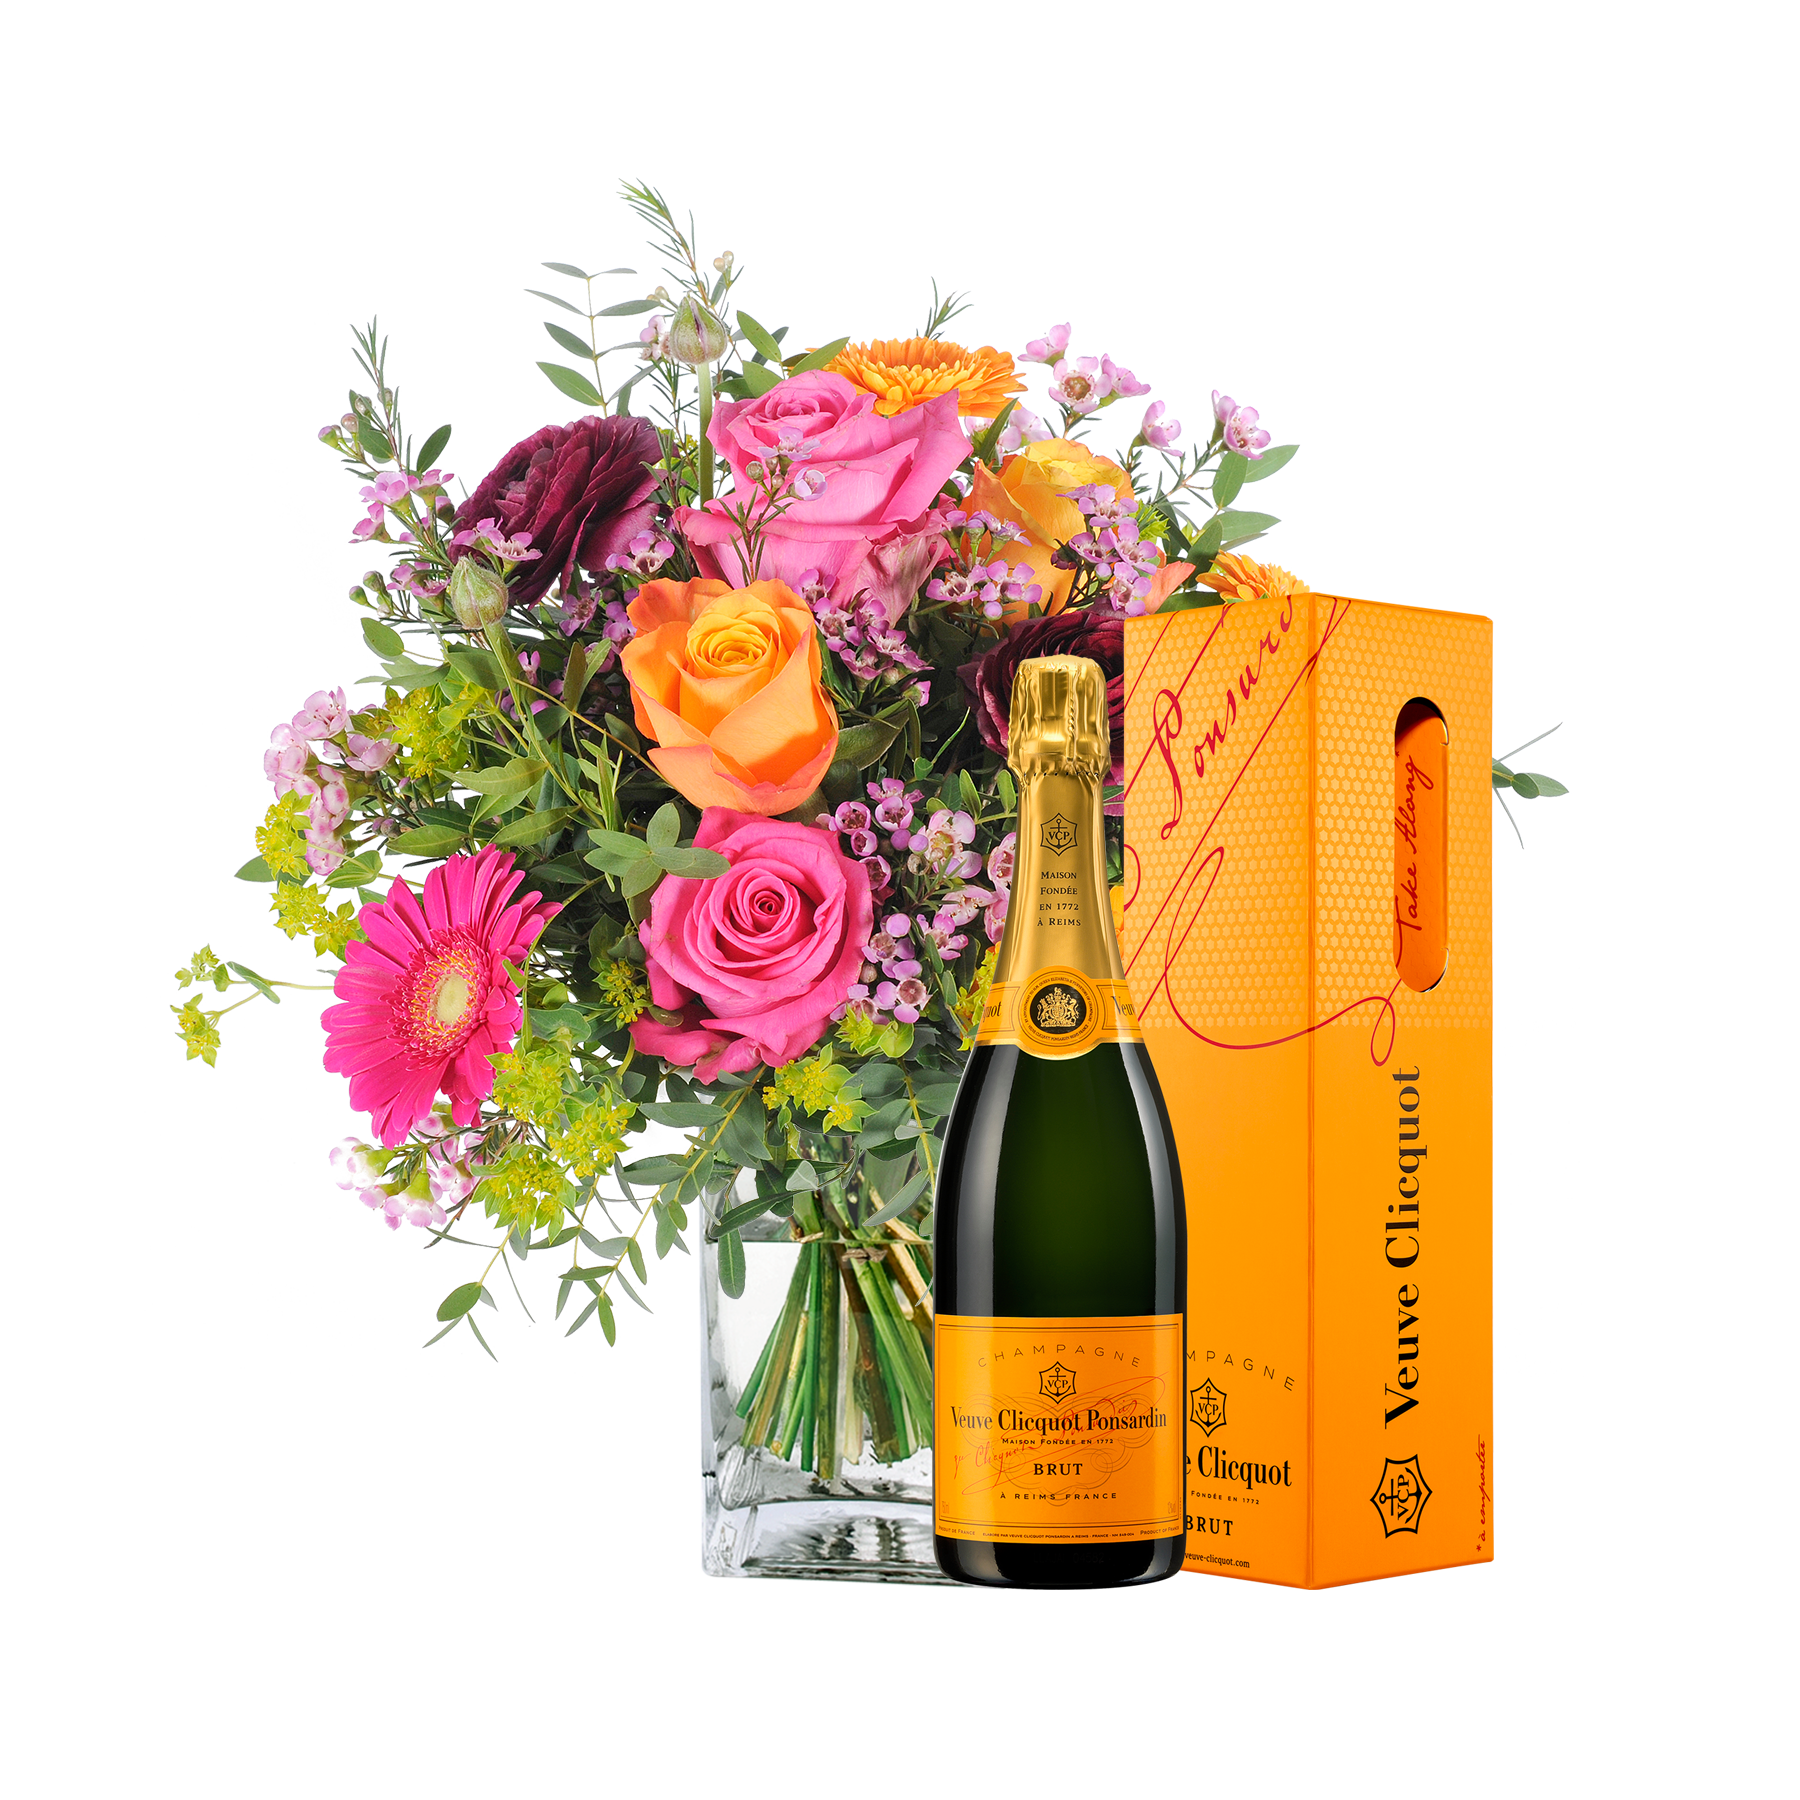 Blumenstrauß Happy Birthday to You mit Champagner Veuve Clicquot von  bestellen